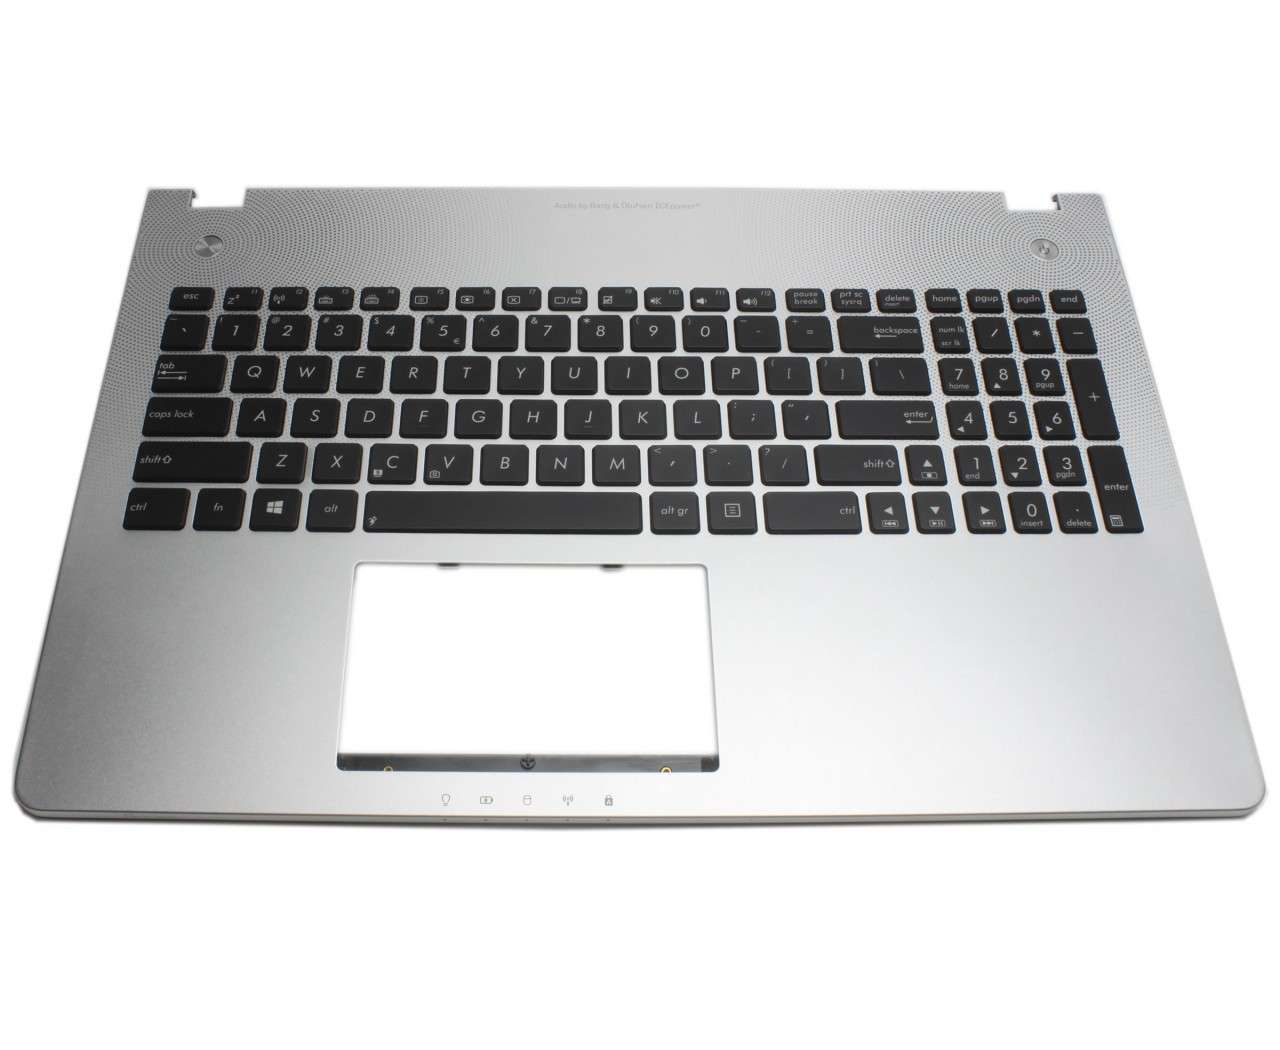 Tastatura Asus N56VV neagra cu Palmrest argintiu iluminata backlit fara Touchpad